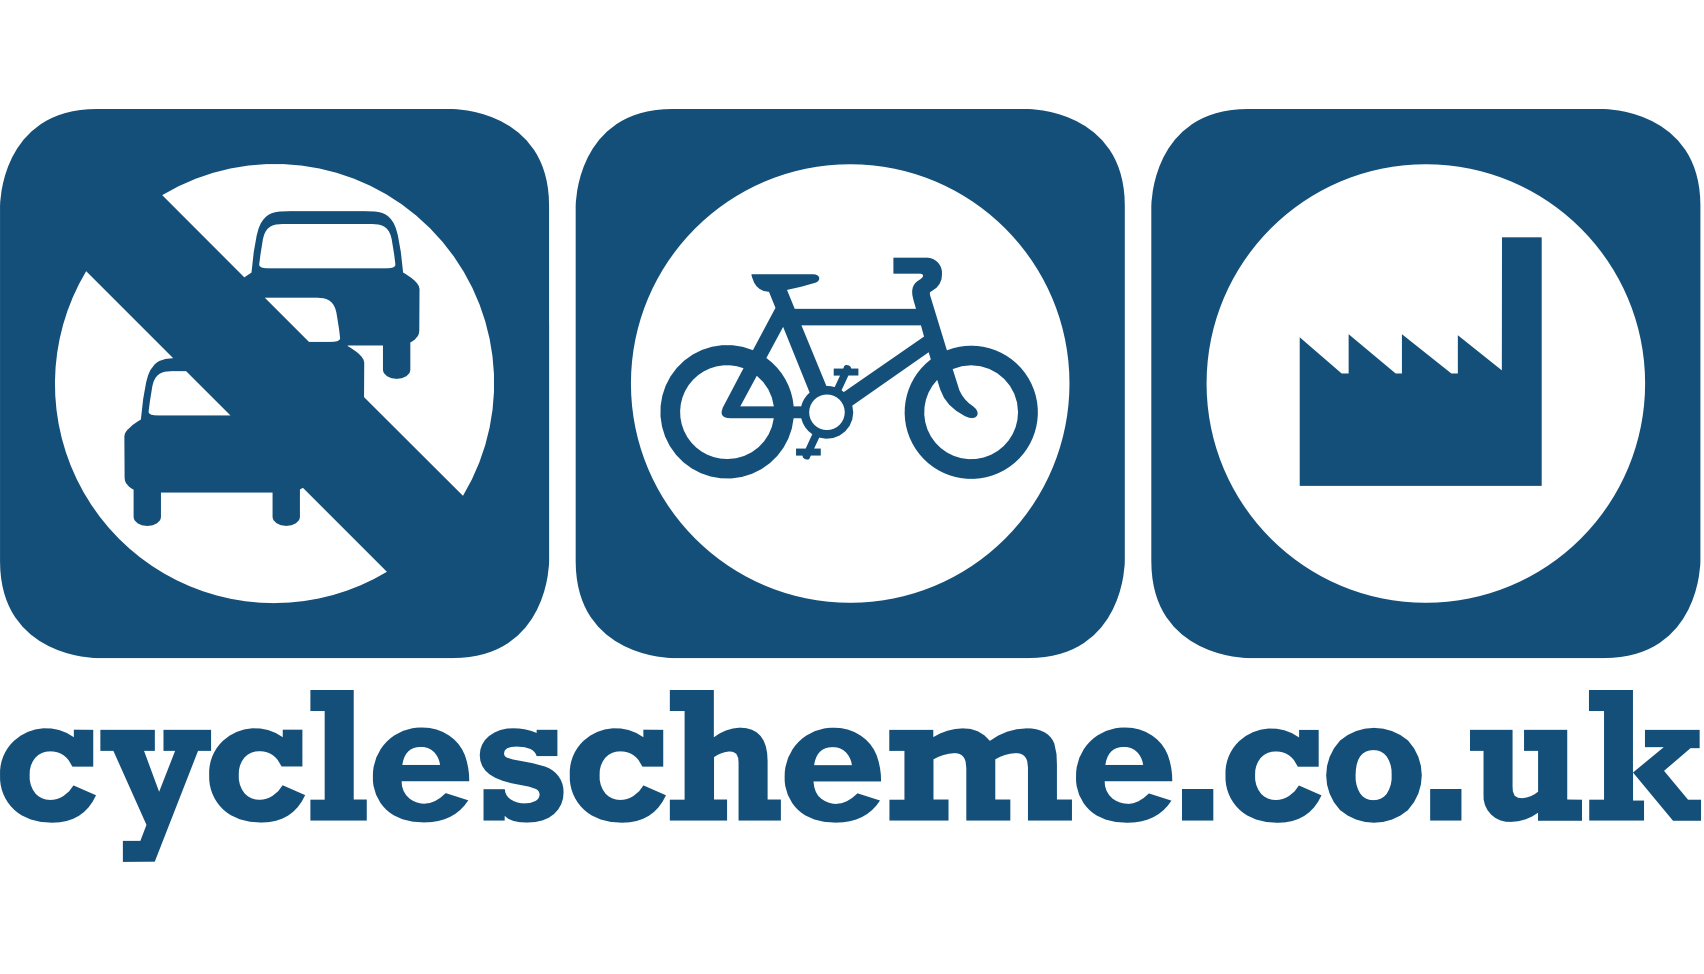 Cyclescheme.co.uk